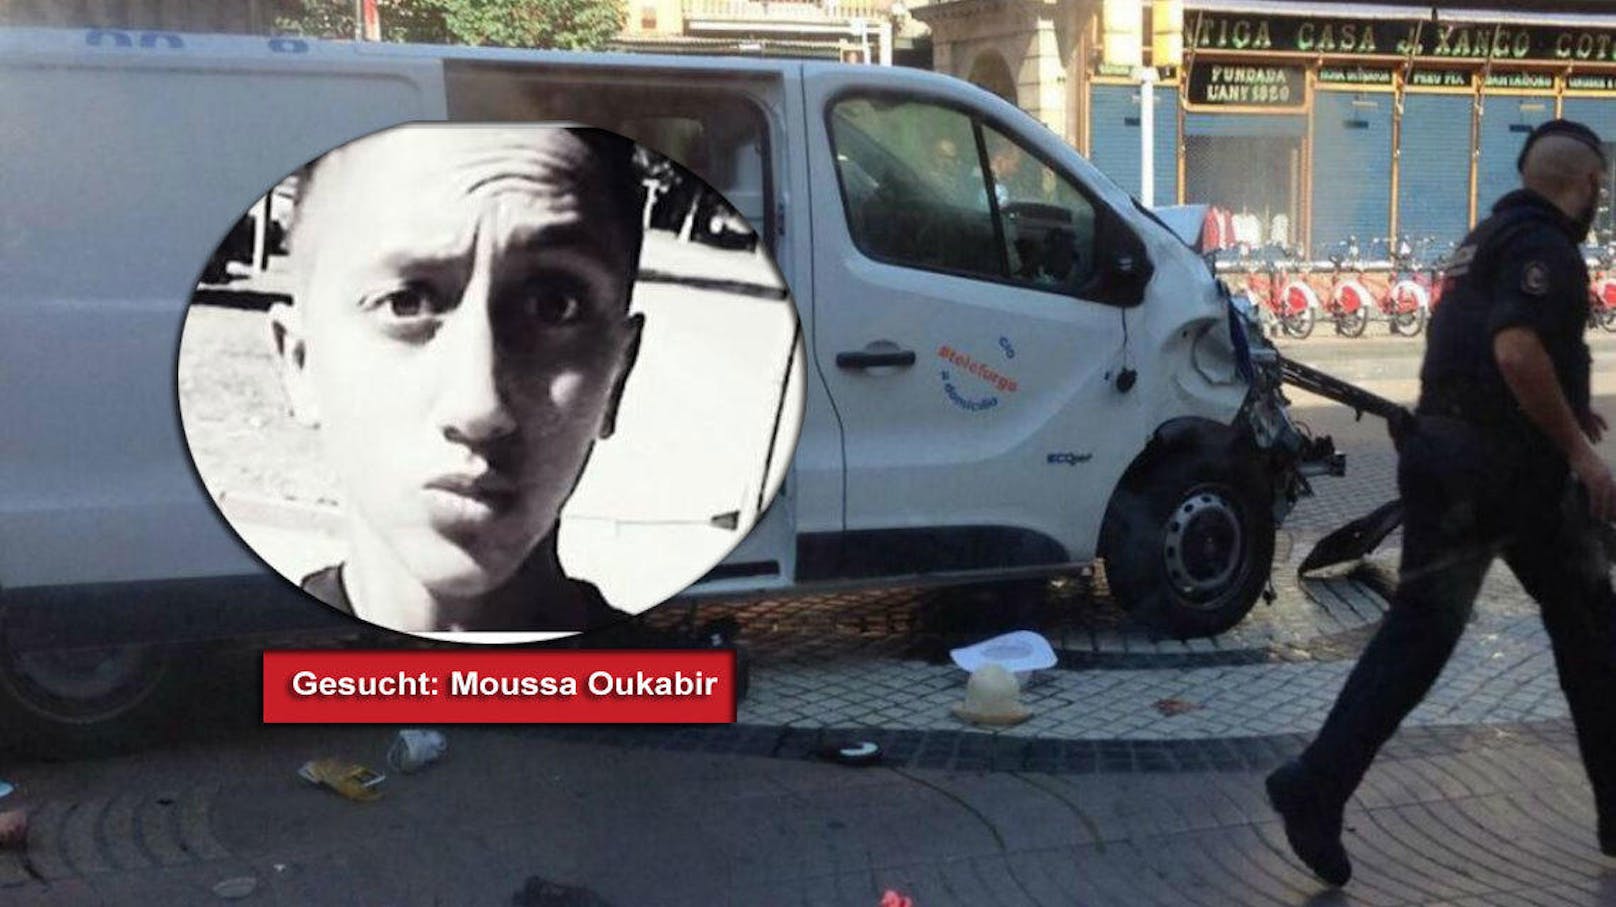 Moussa Oukabir, der lange gesucht wurde, wurde bereits in der Nacht auf Freitag erschossen. Der 18-Jährige soll zu den fünf erschossenen Attentätern in Cambrils gezählt haben - das gab die katalanische Polizei Freitagabend laut spanischen Medienberichten bekannt.